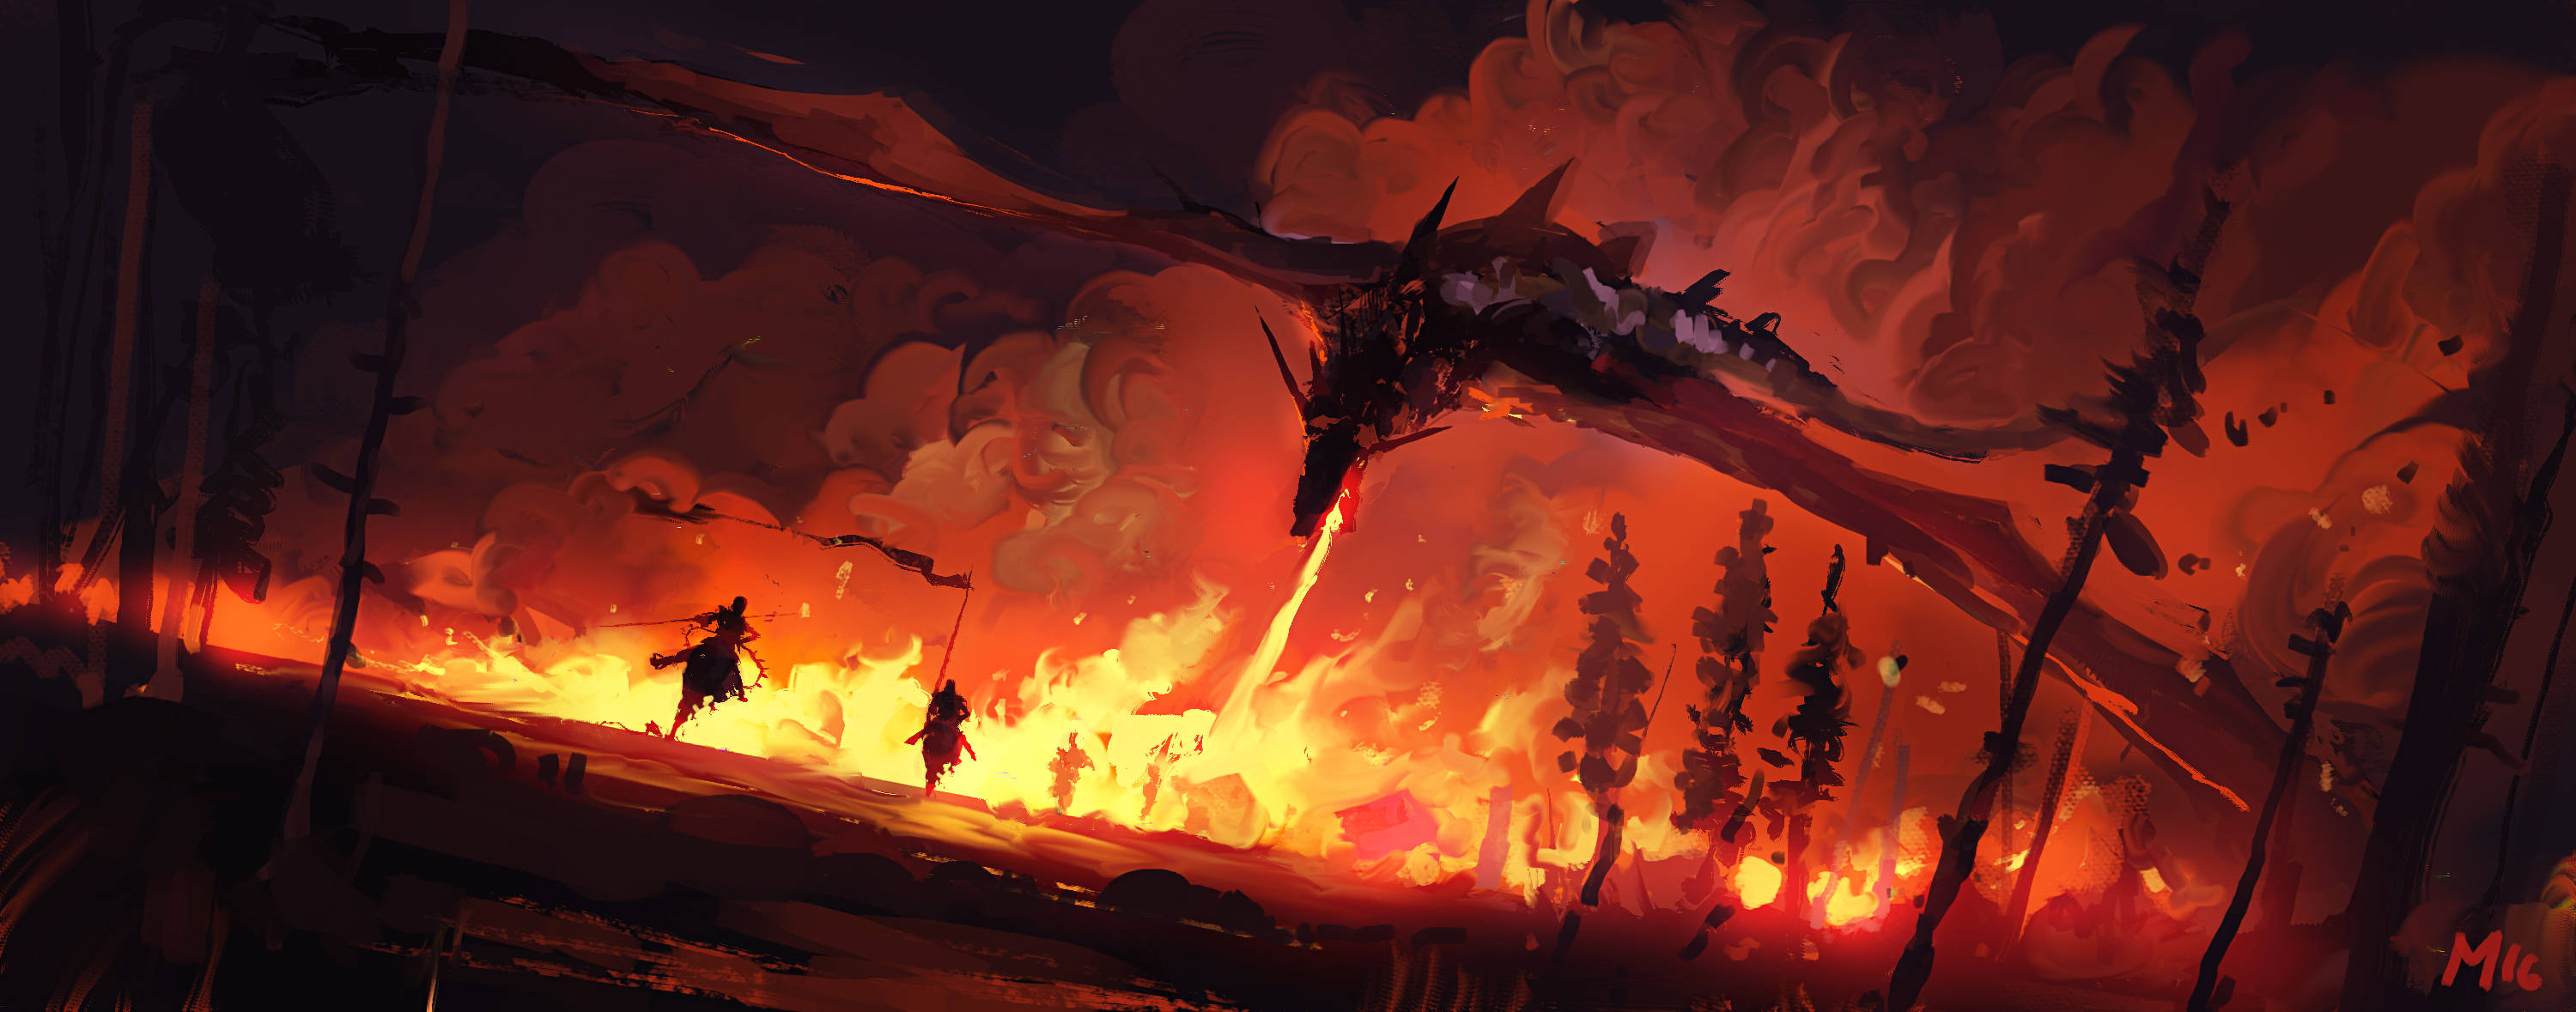 Lava Dragon Forest Fire Wallpaper